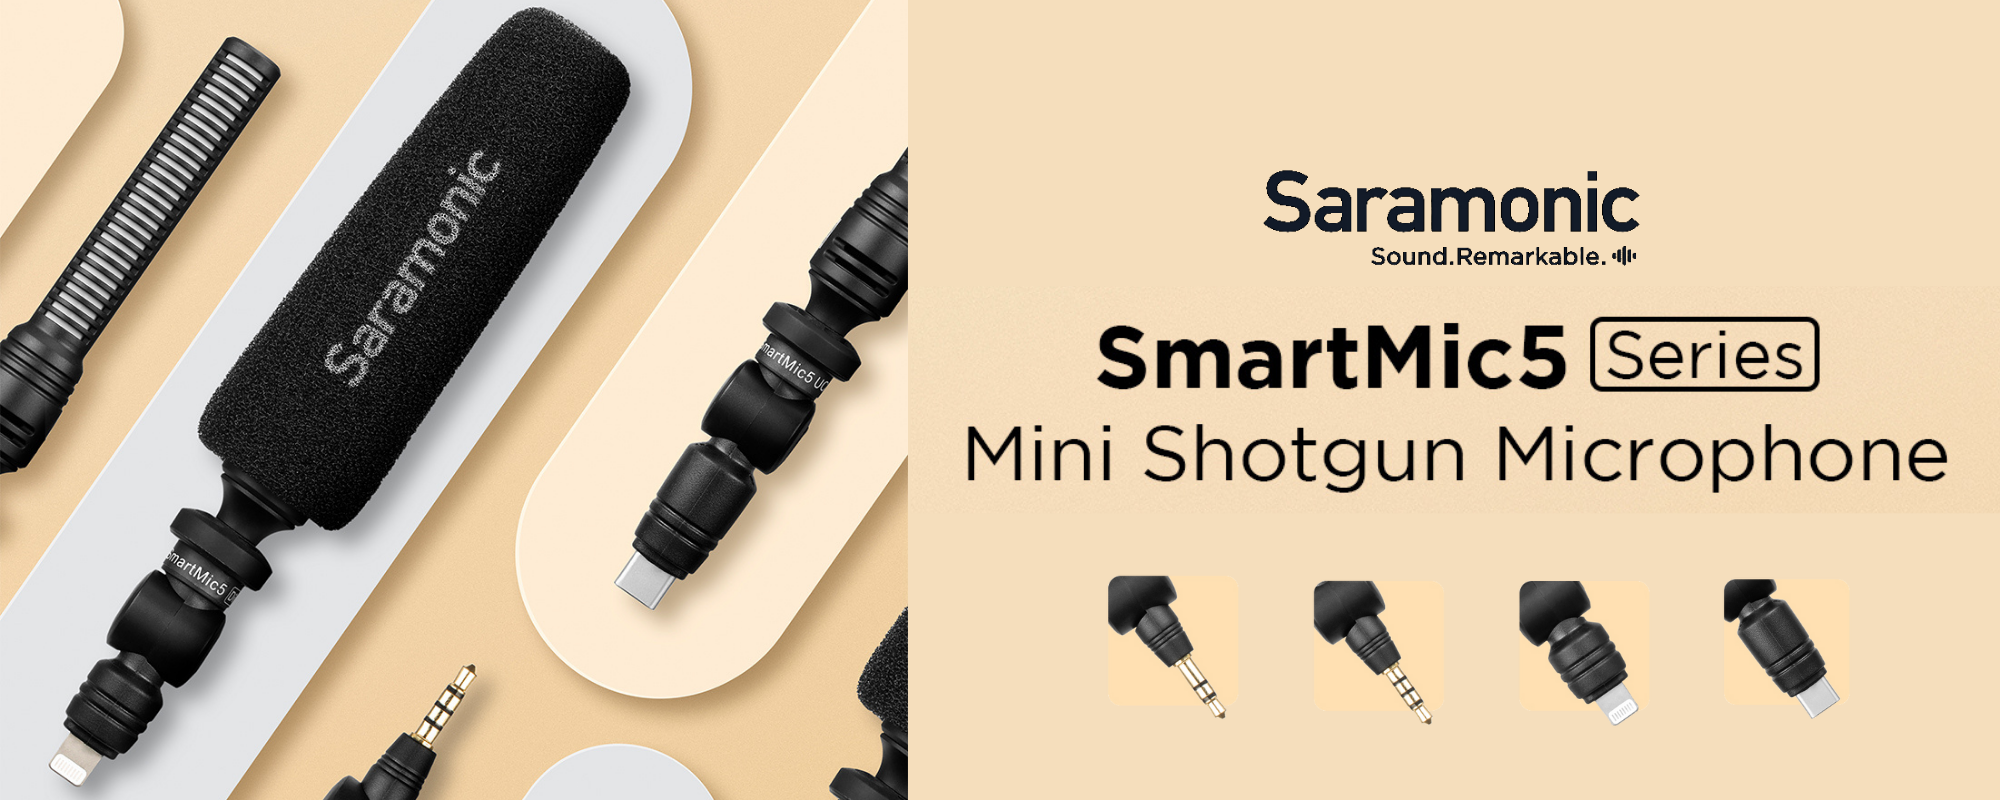 Mikrofon typu shotgunc Saramonic SmartMic5 dla urządzeń mobilnych